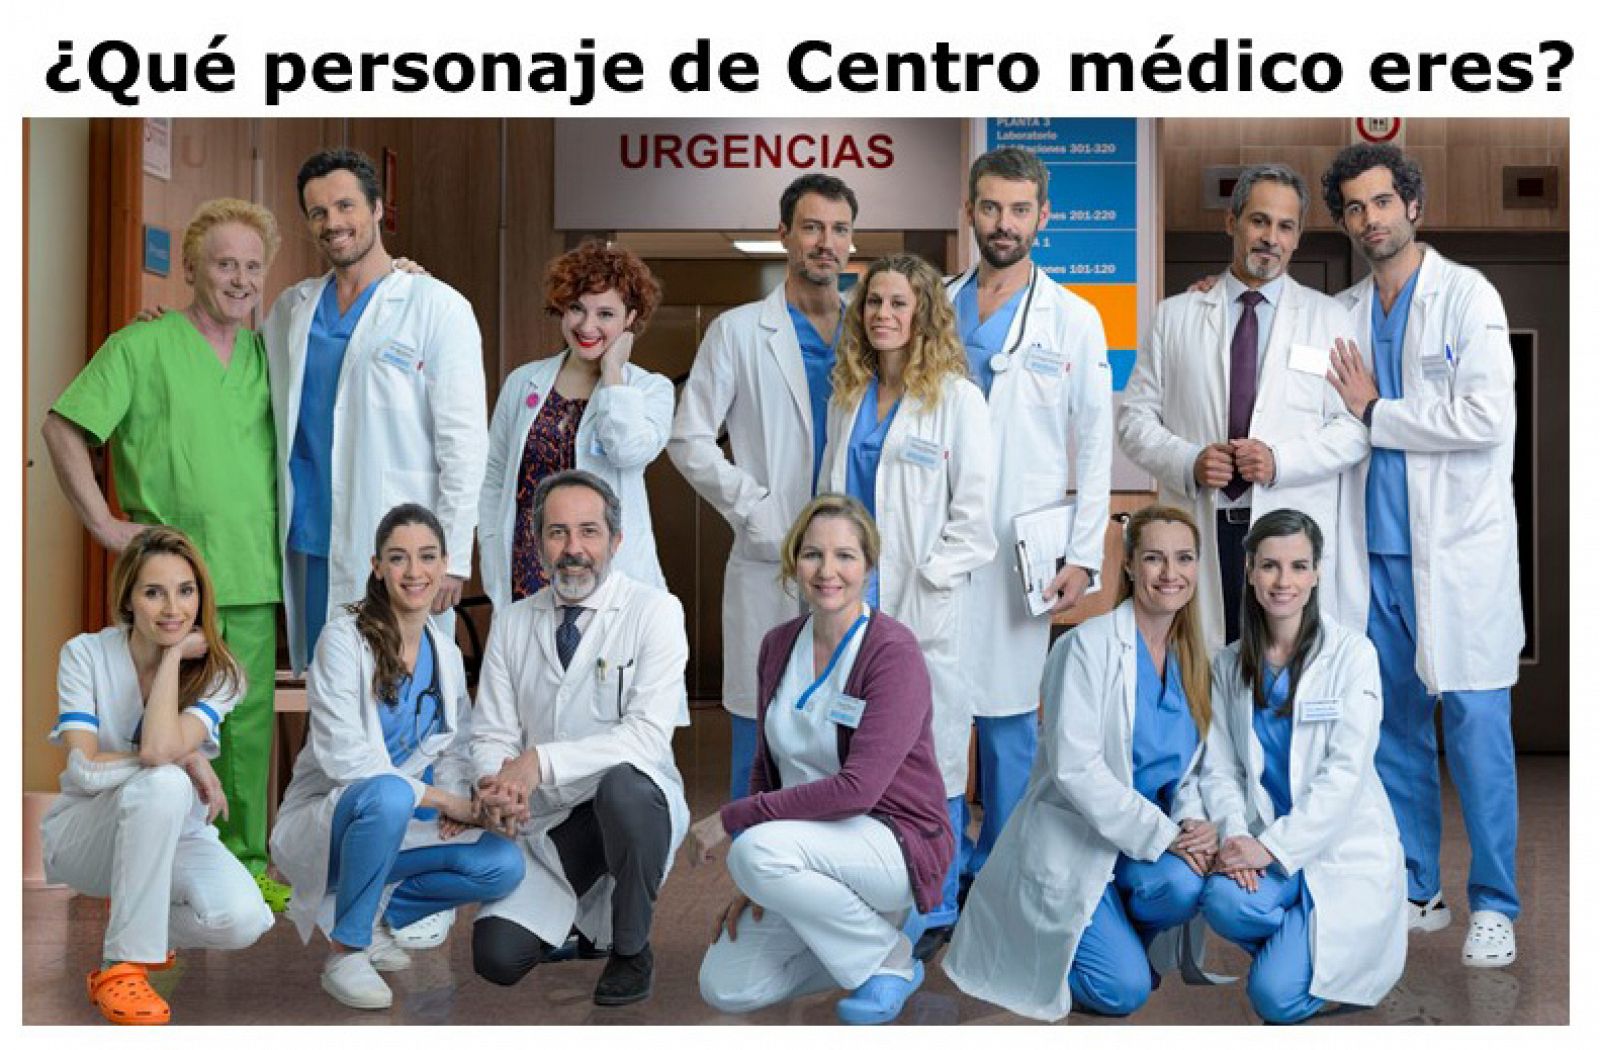 Personajes de Centr medico